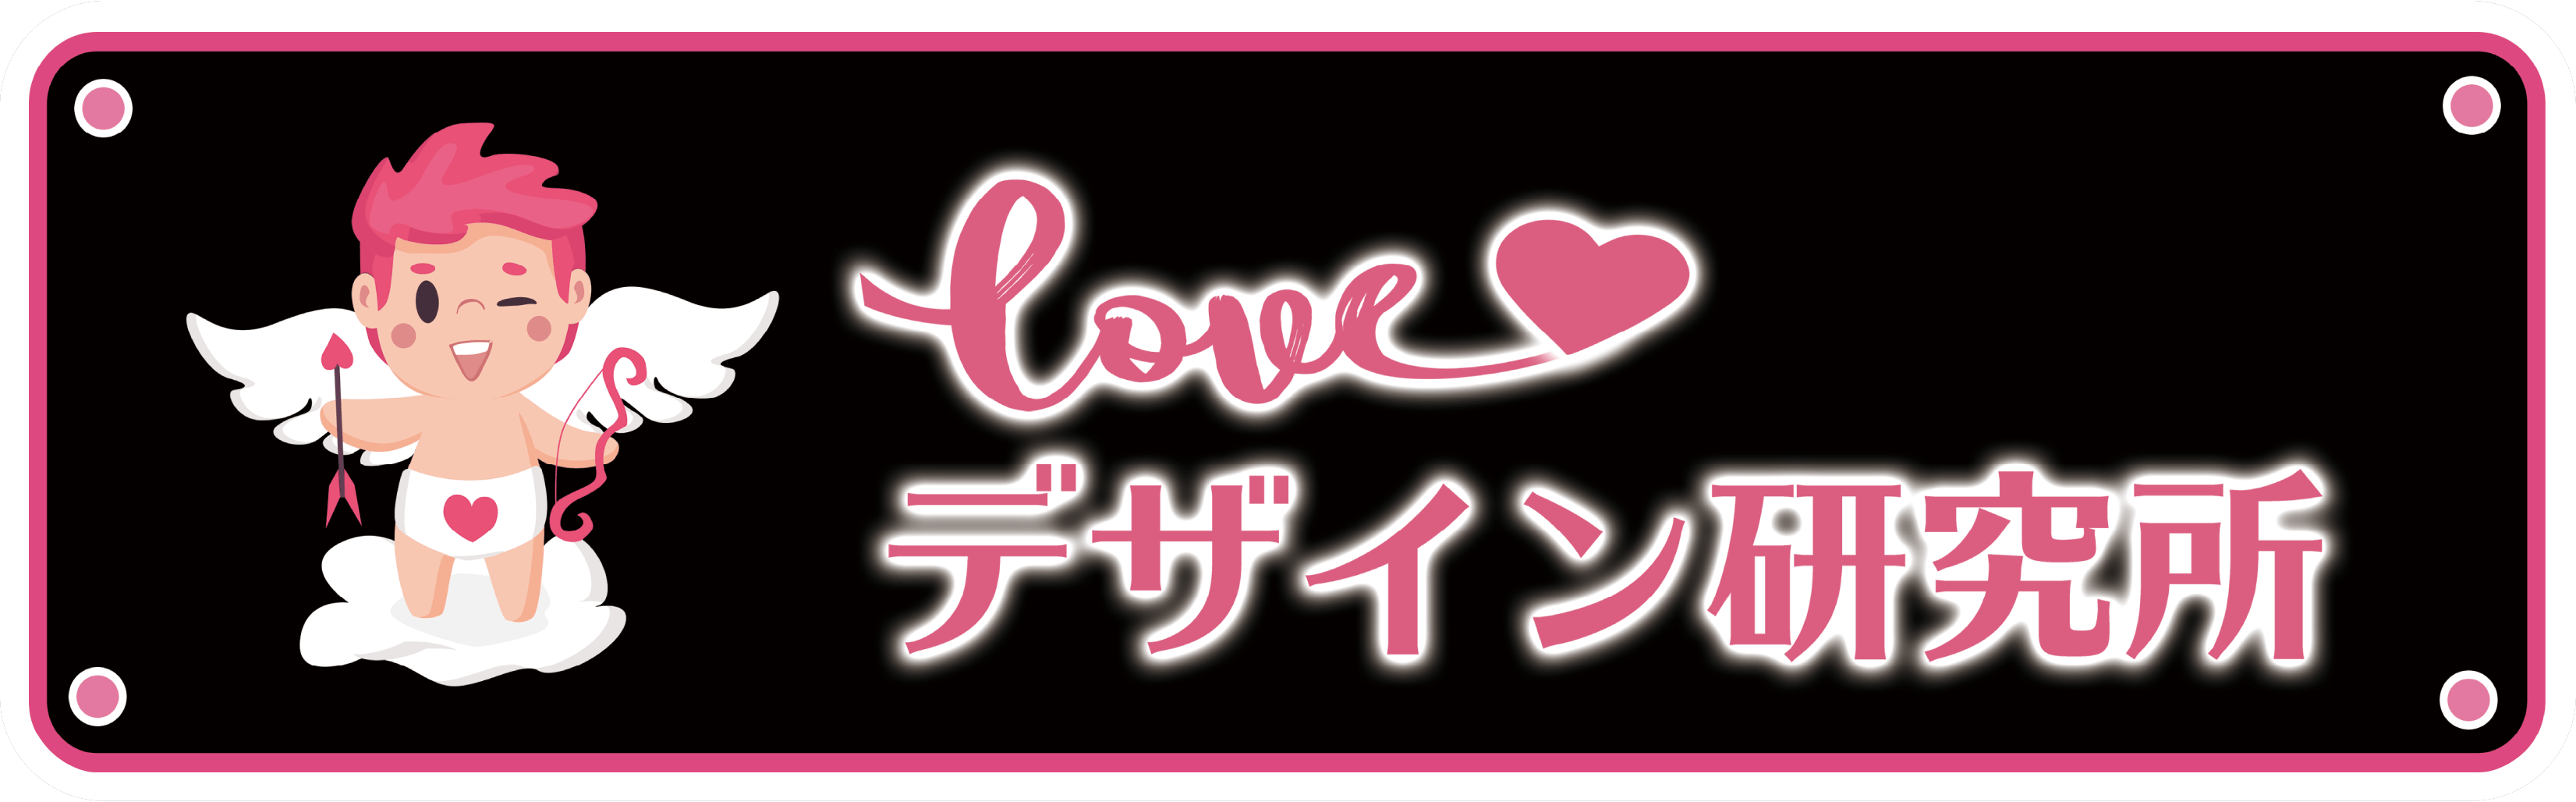 Loveデザイン研究所